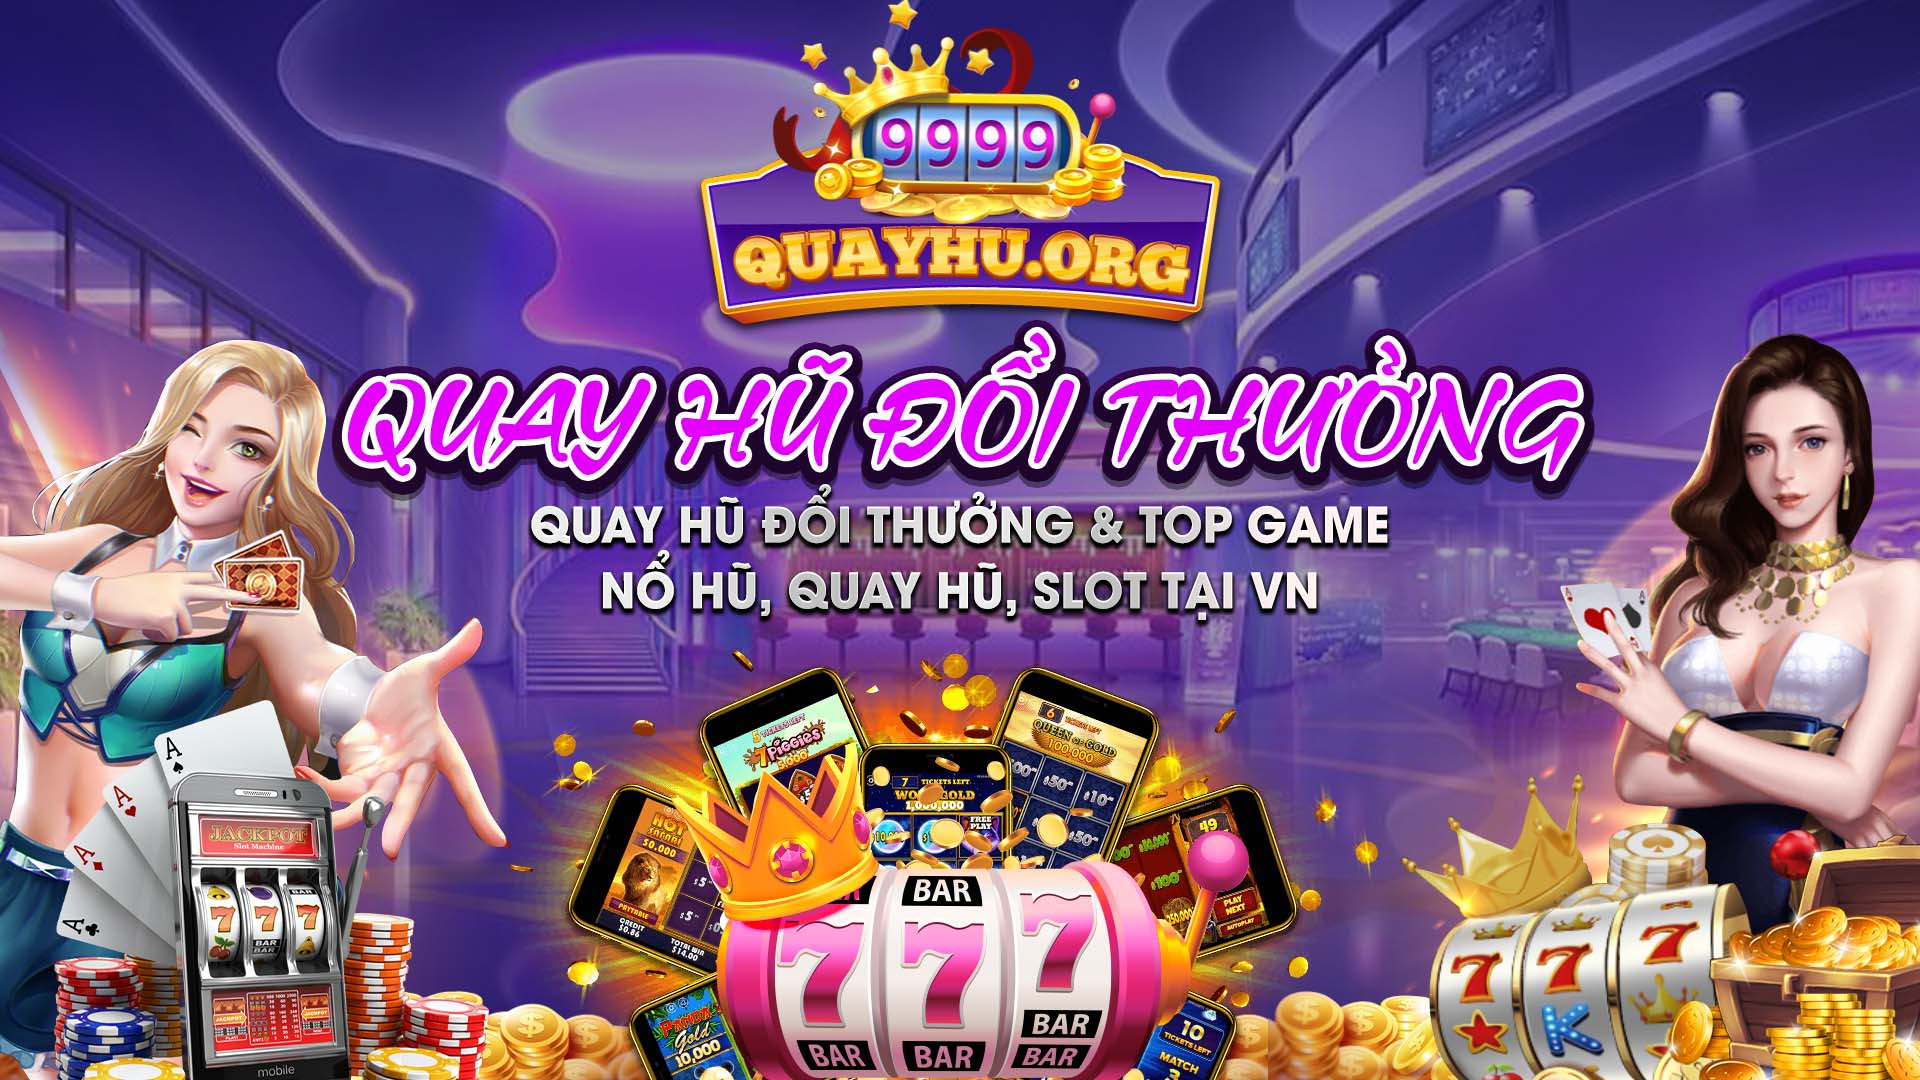 Quay hũ TXOL dỏi thuỏng Top Game No Hu Quay Hu TXOL Slot Doi Thuong 2022